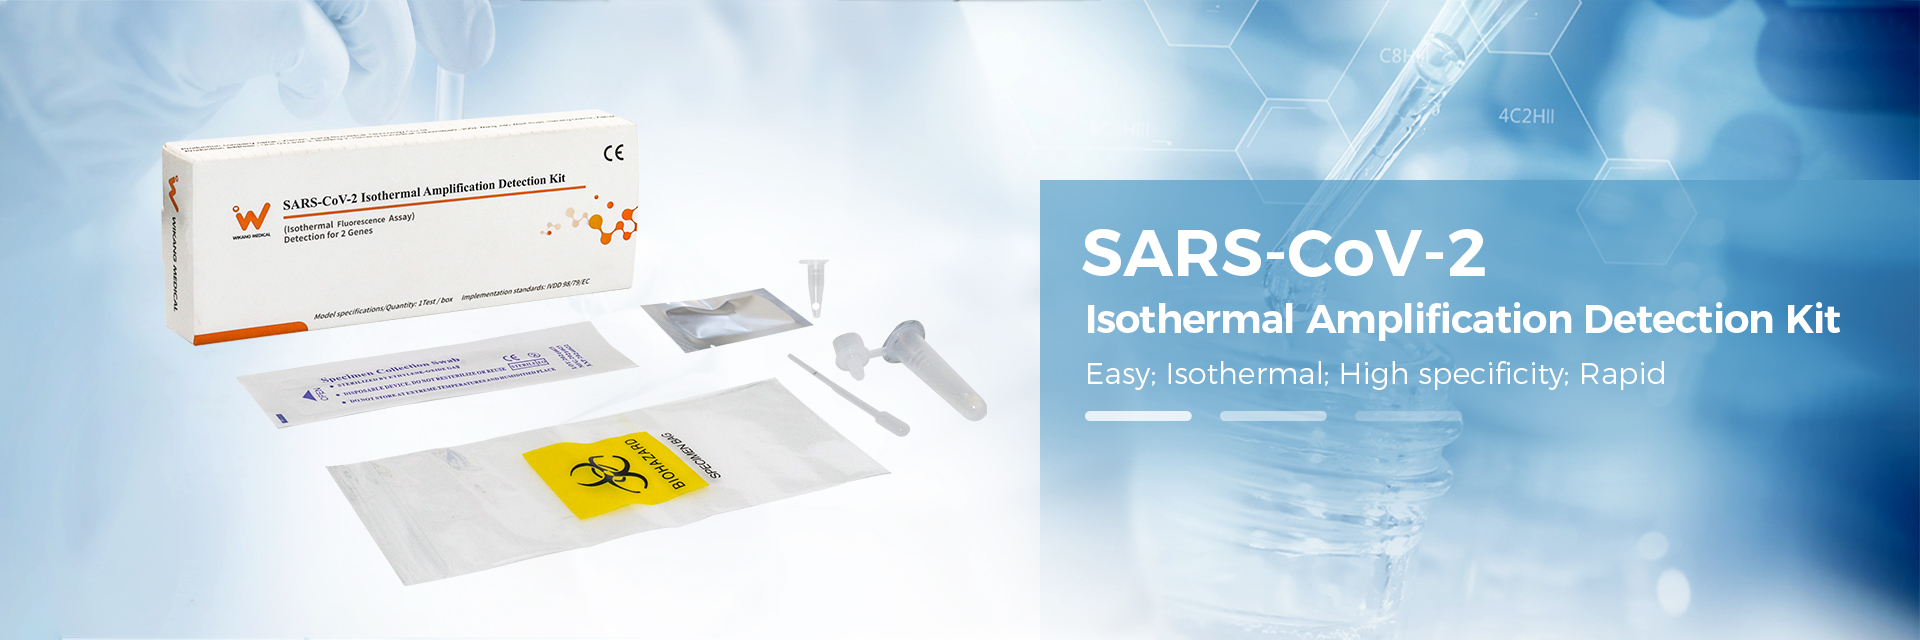 Kit de detección de amplificación isotérmica SARS-CoV-2